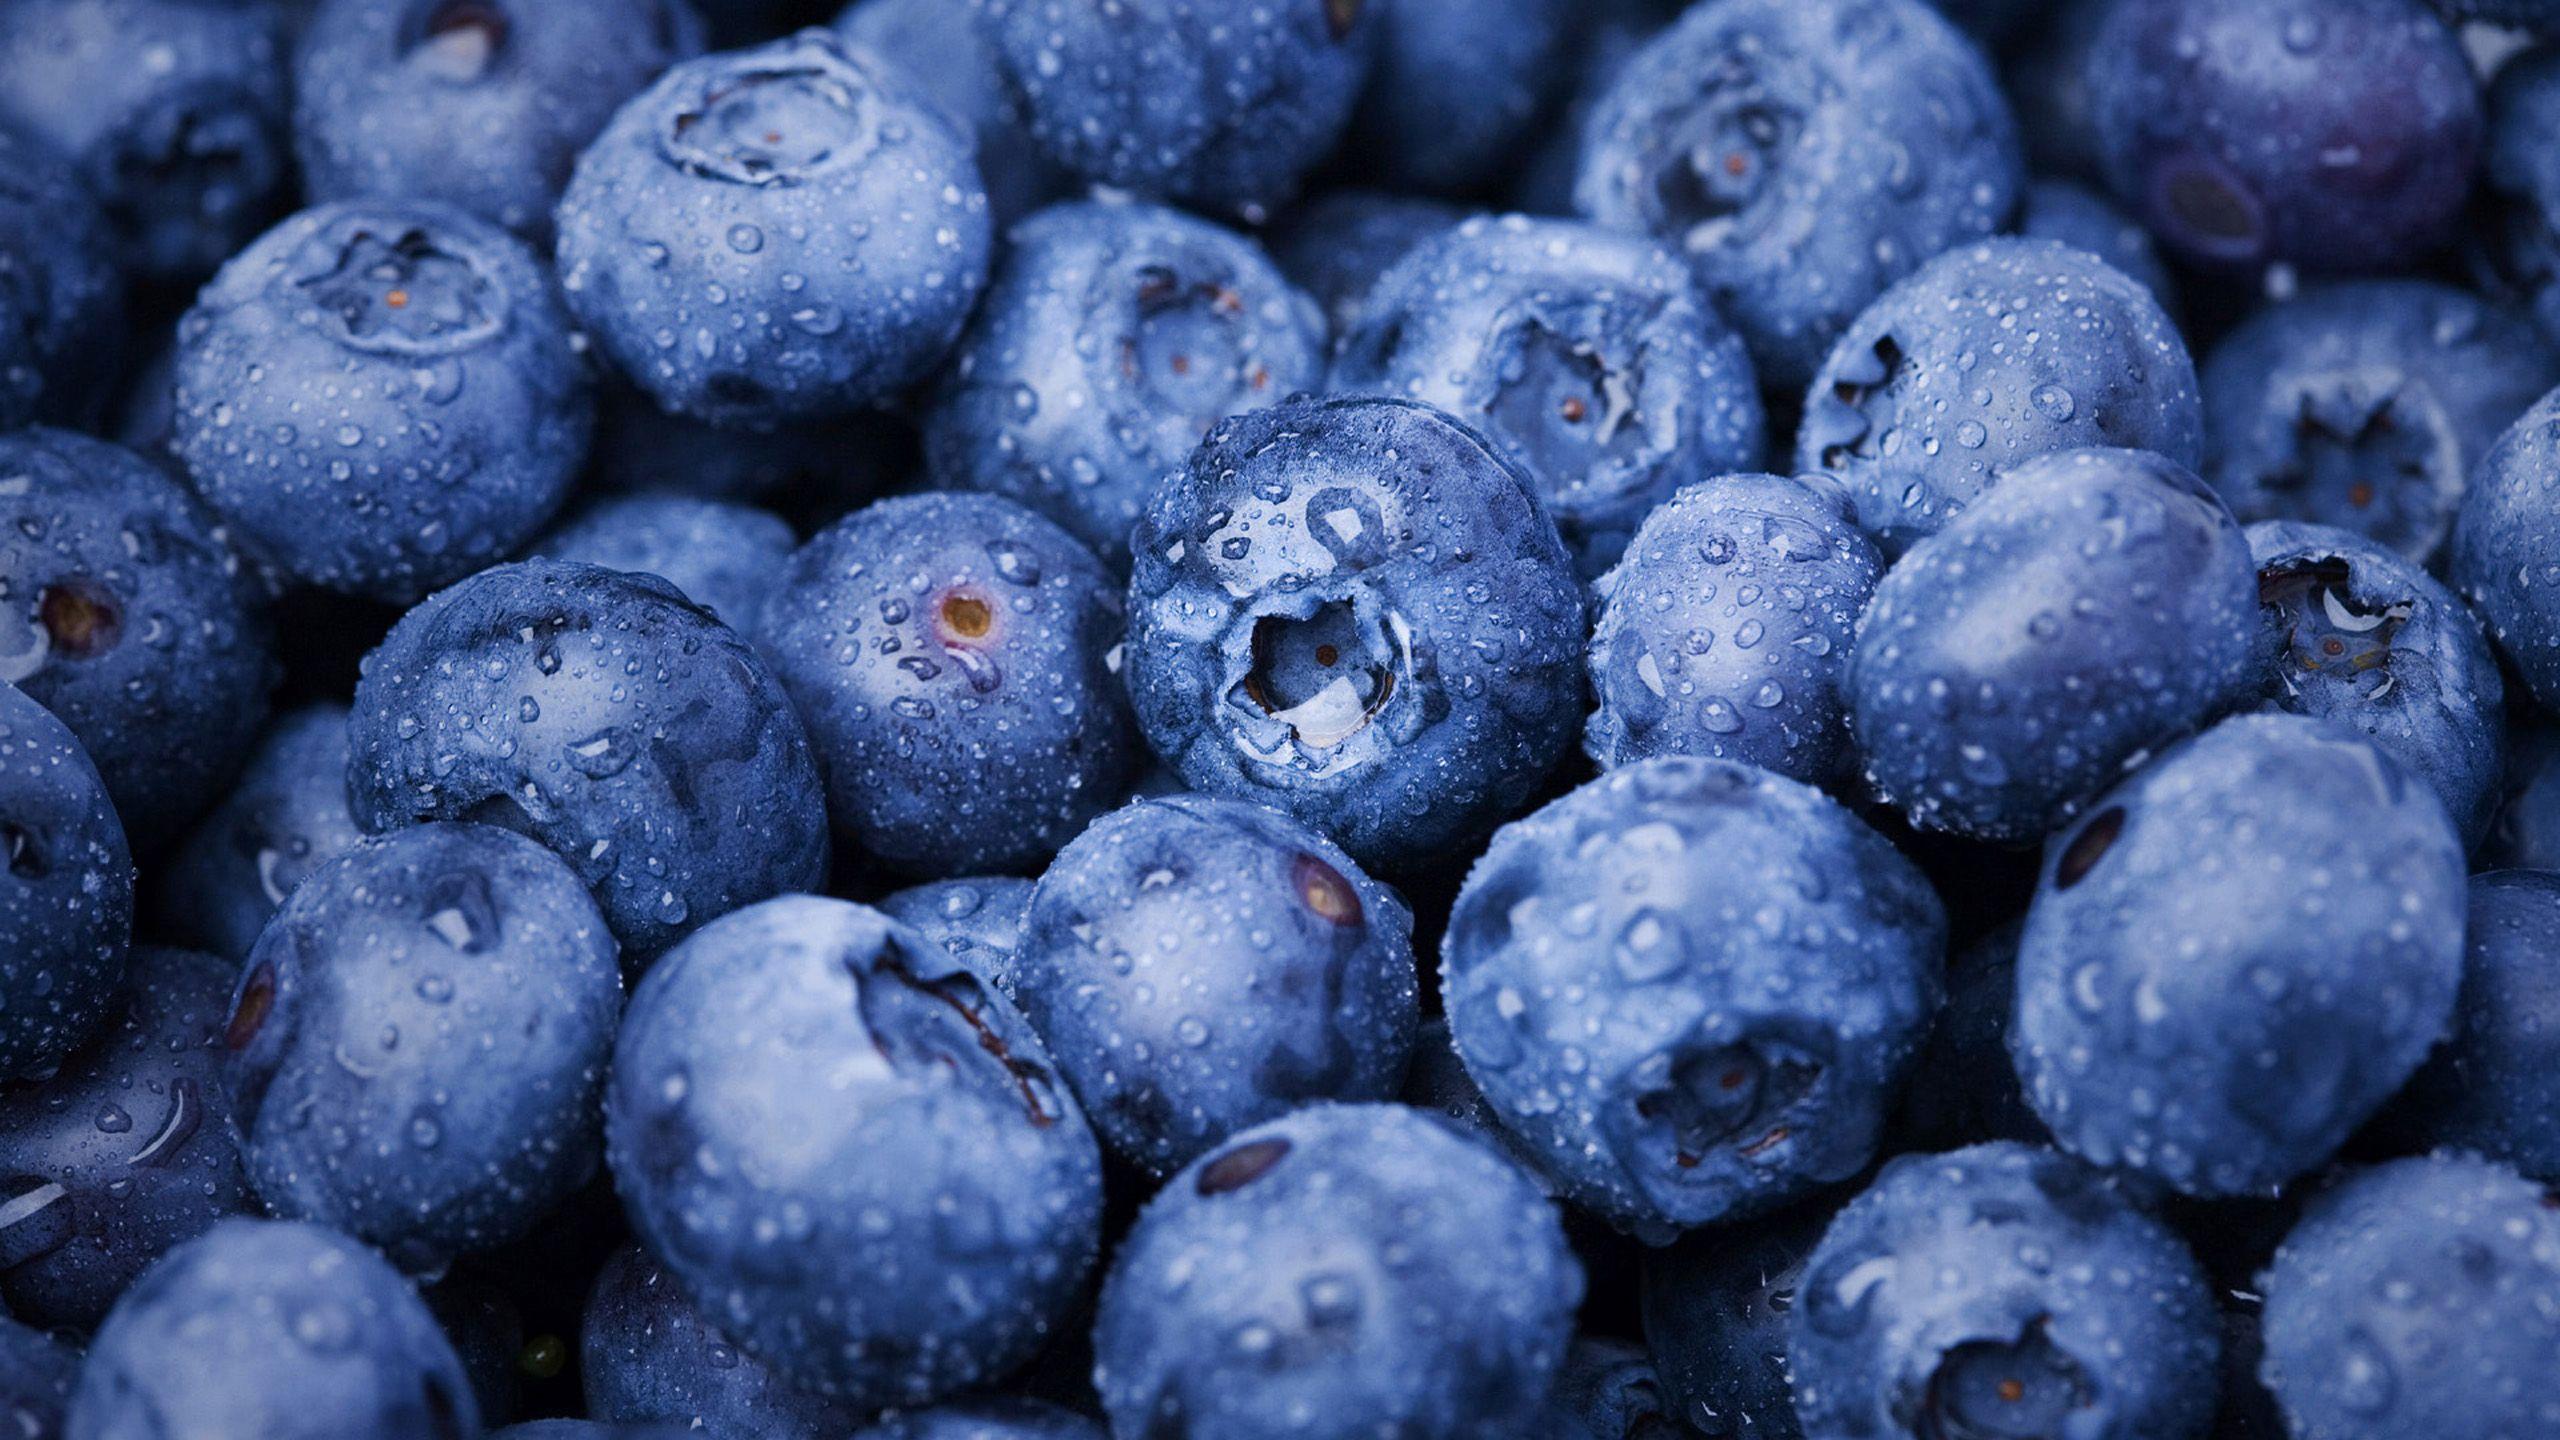 Blueberry Wallpaper, 43 Widescreen HQFX Wallpaper of Blueberry